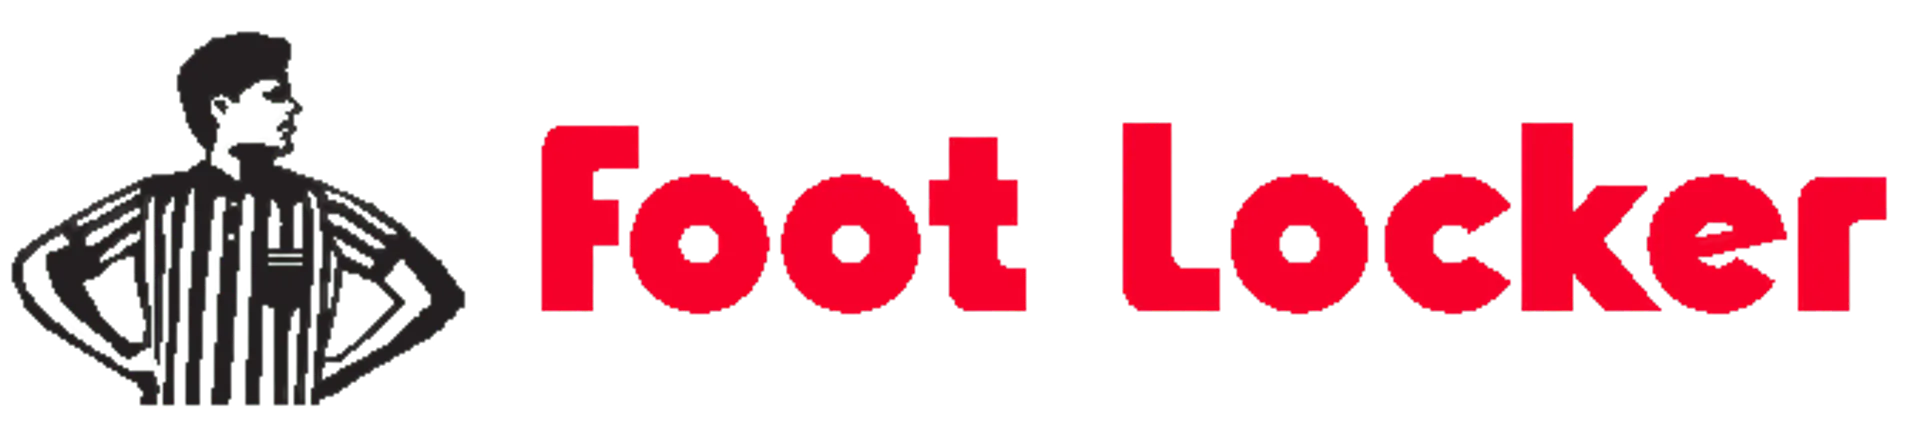 FOOTLOCKER logo